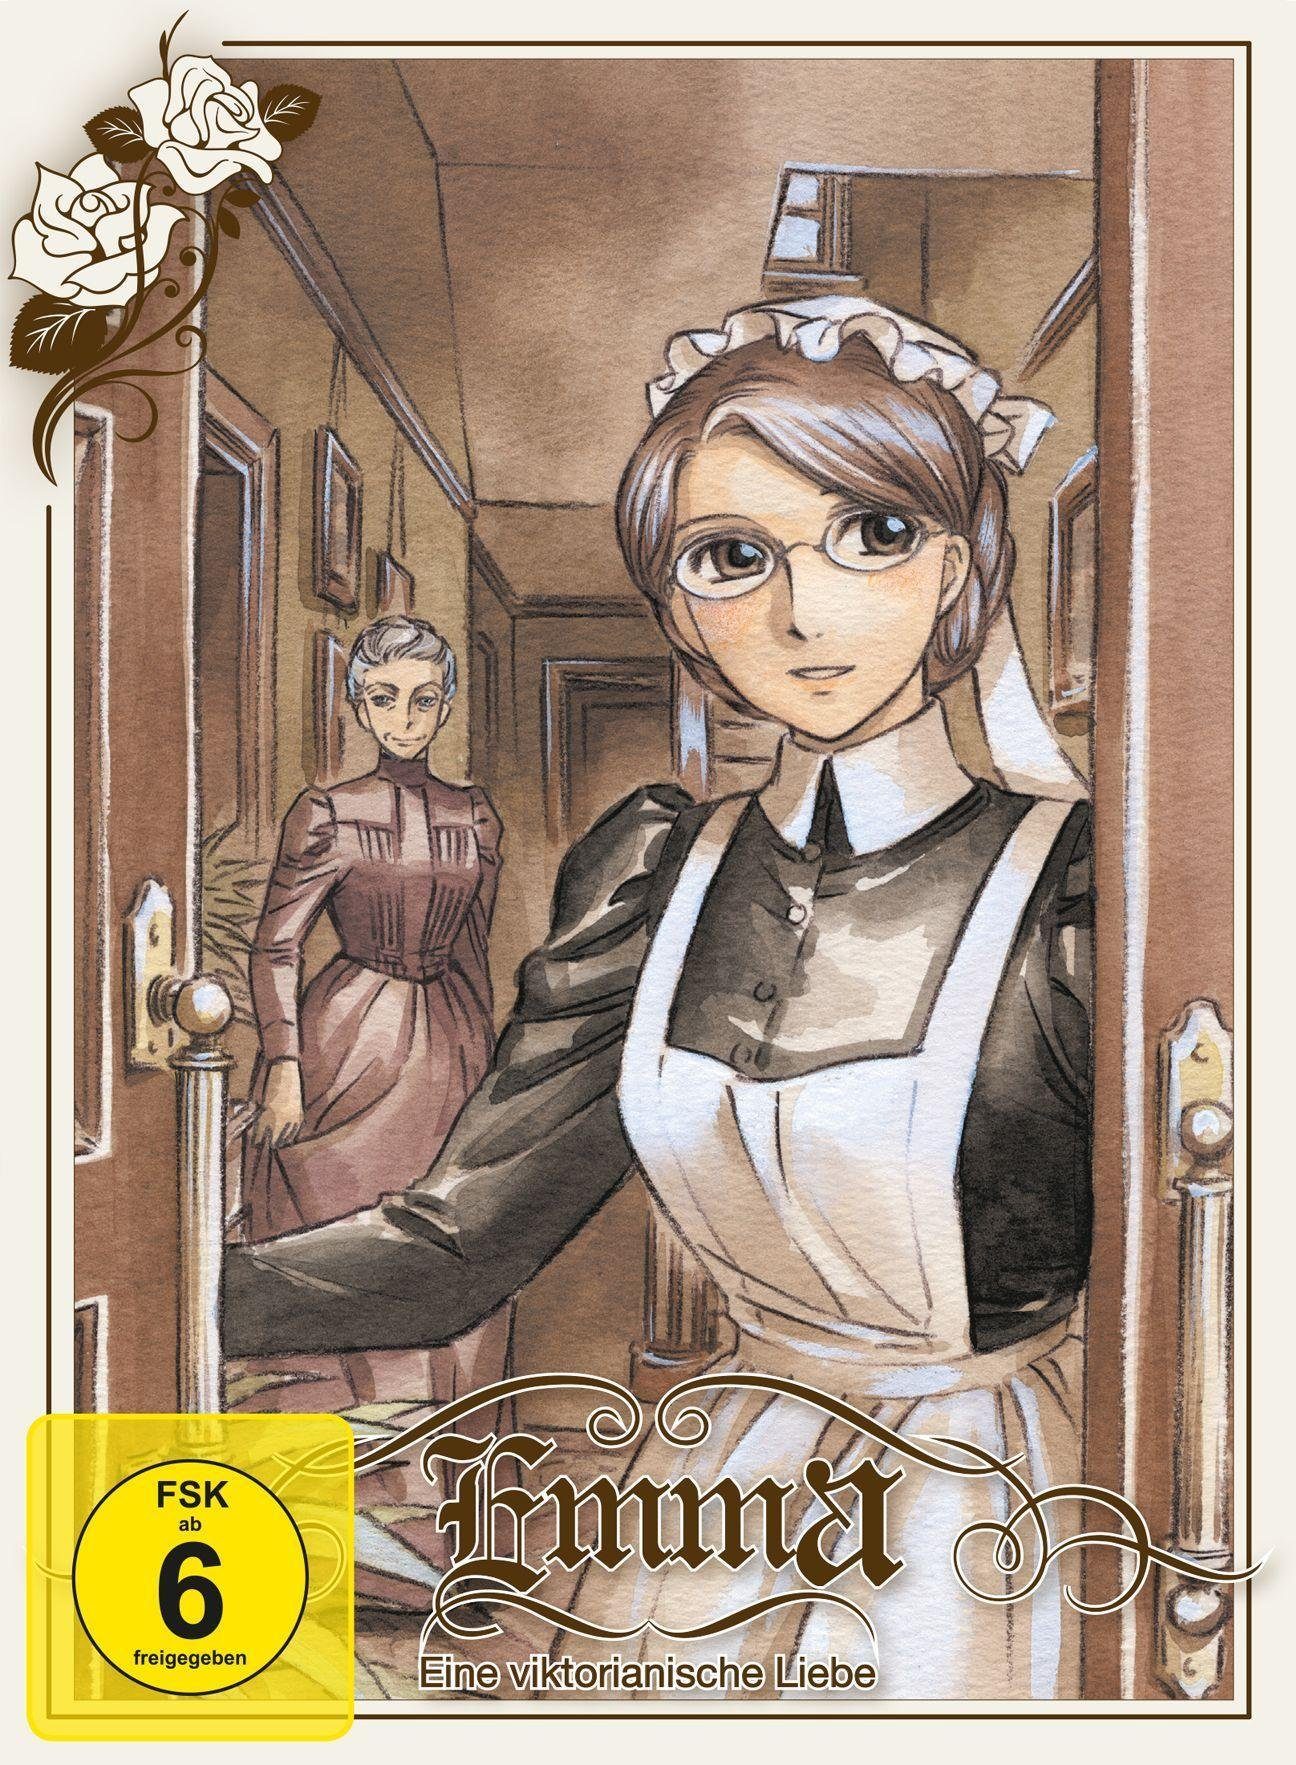 Crunchyroll DVD-Rohling Mirai Nikki. Vol.1-5, 5 DVD (Gesamtausgabe)